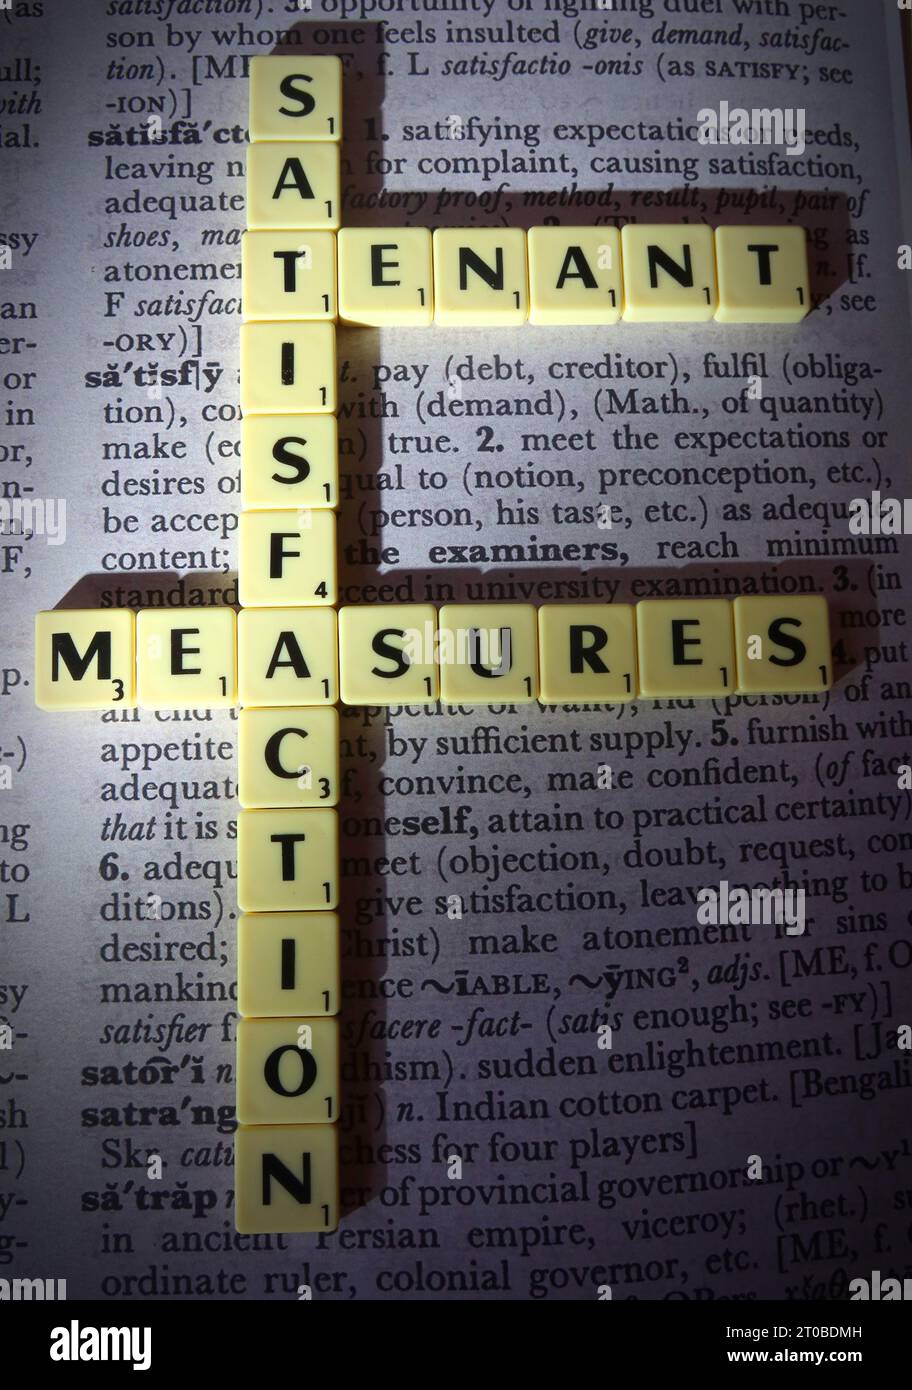 RSH mesures de satisfaction des locataires, TSM Standard, en lettres scrabble, sur la définition du dictionnaire Banque D'Images